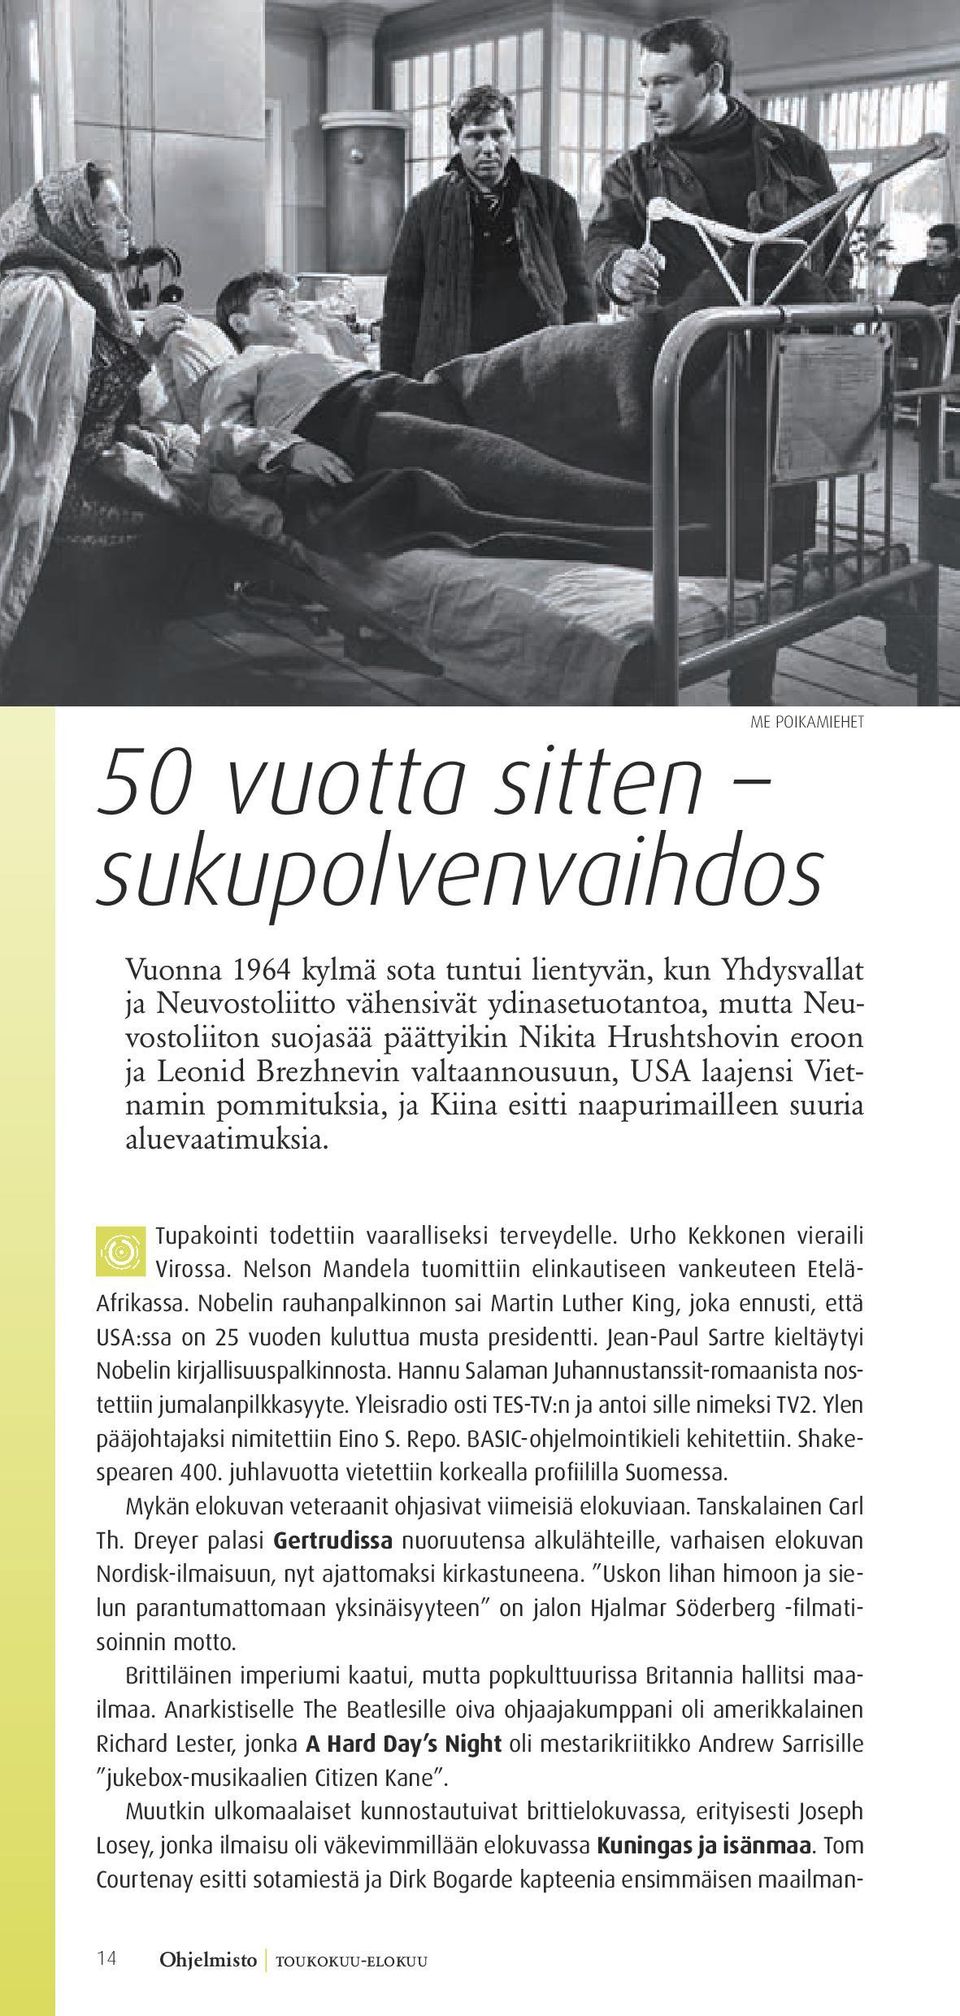 Tupakointi todettiin vaaralliseksi terveydelle. Urho Kekkonen vieraili Virossa. Nelson Mandela tuomittiin elinkautiseen vankeuteen Etelä- Afrikassa.